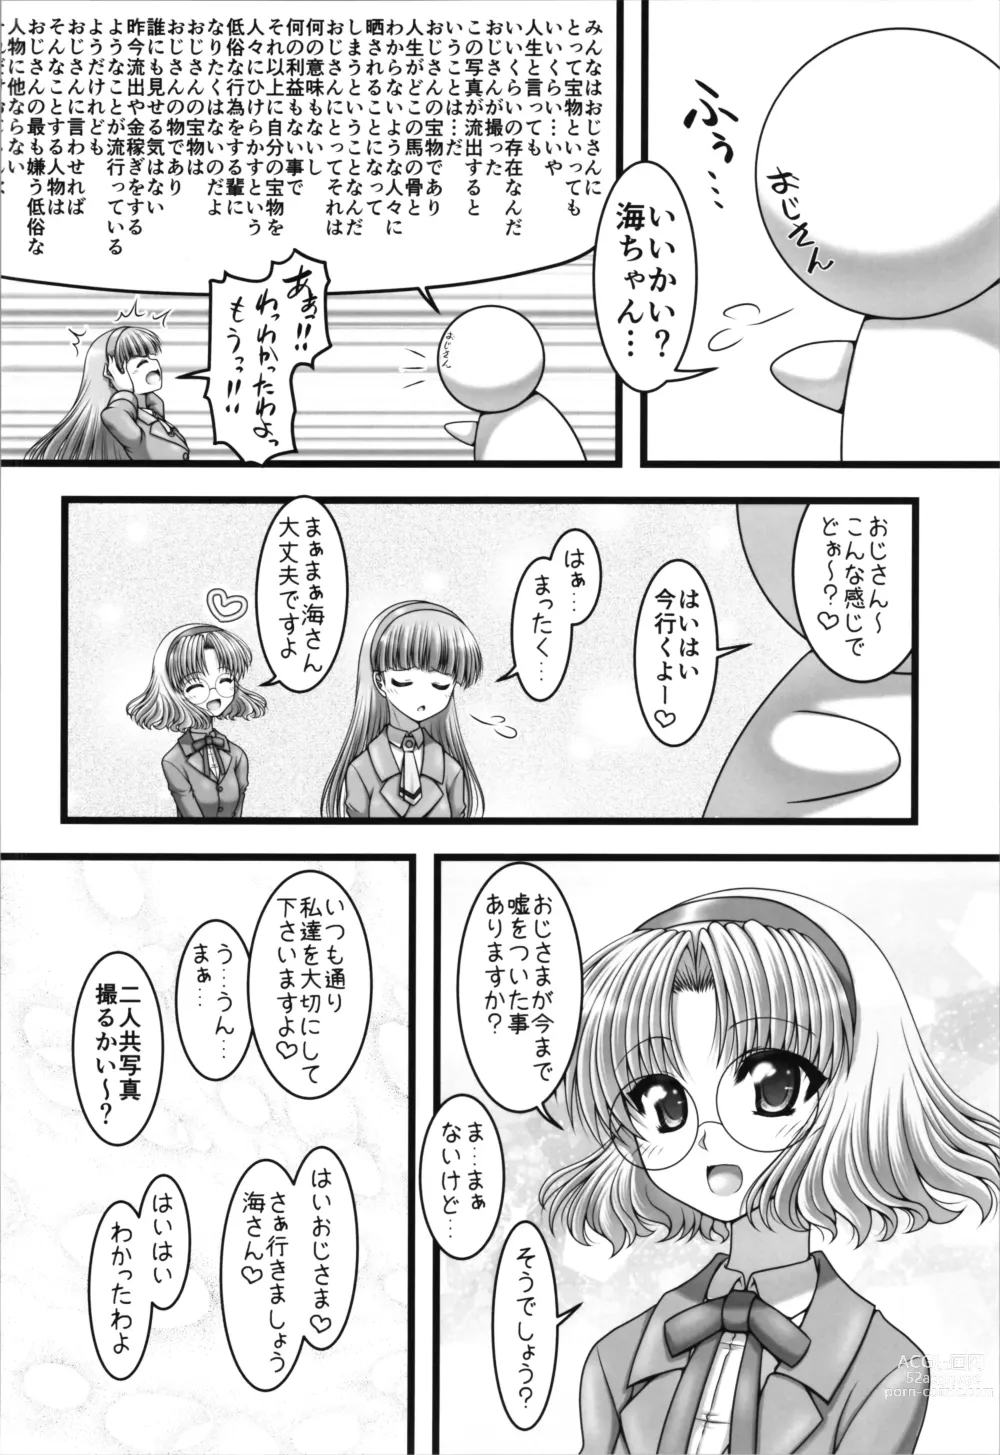 Page 8 of doujinshi Toriaina Towairaito